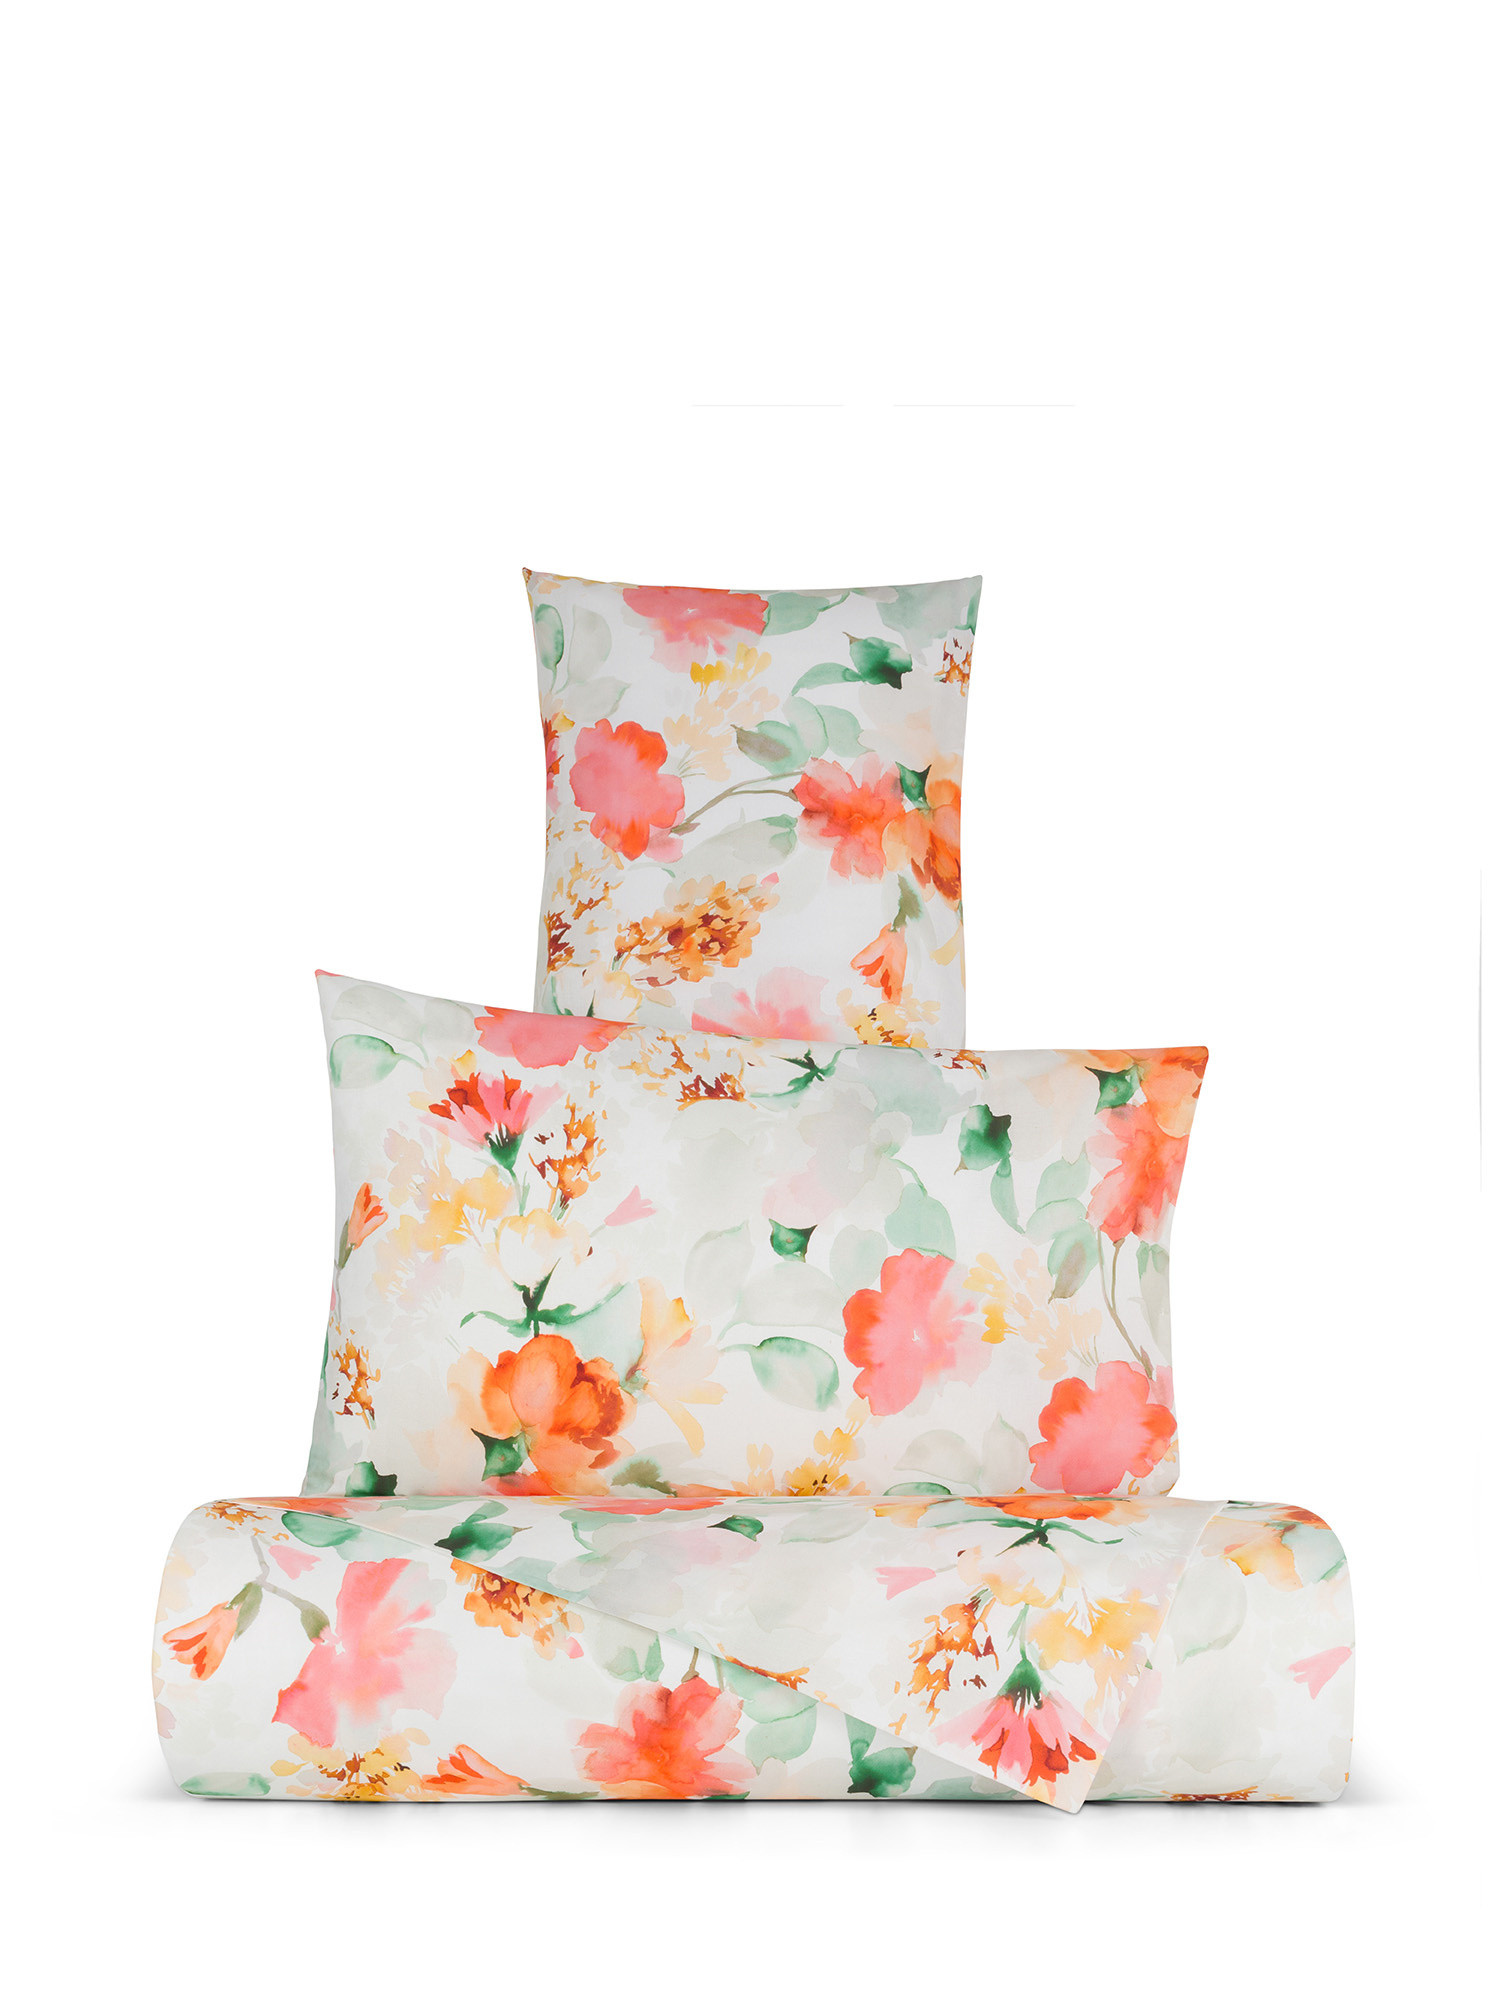 Floral patterned cotton duvet cover set, Multicolor, large image number 0